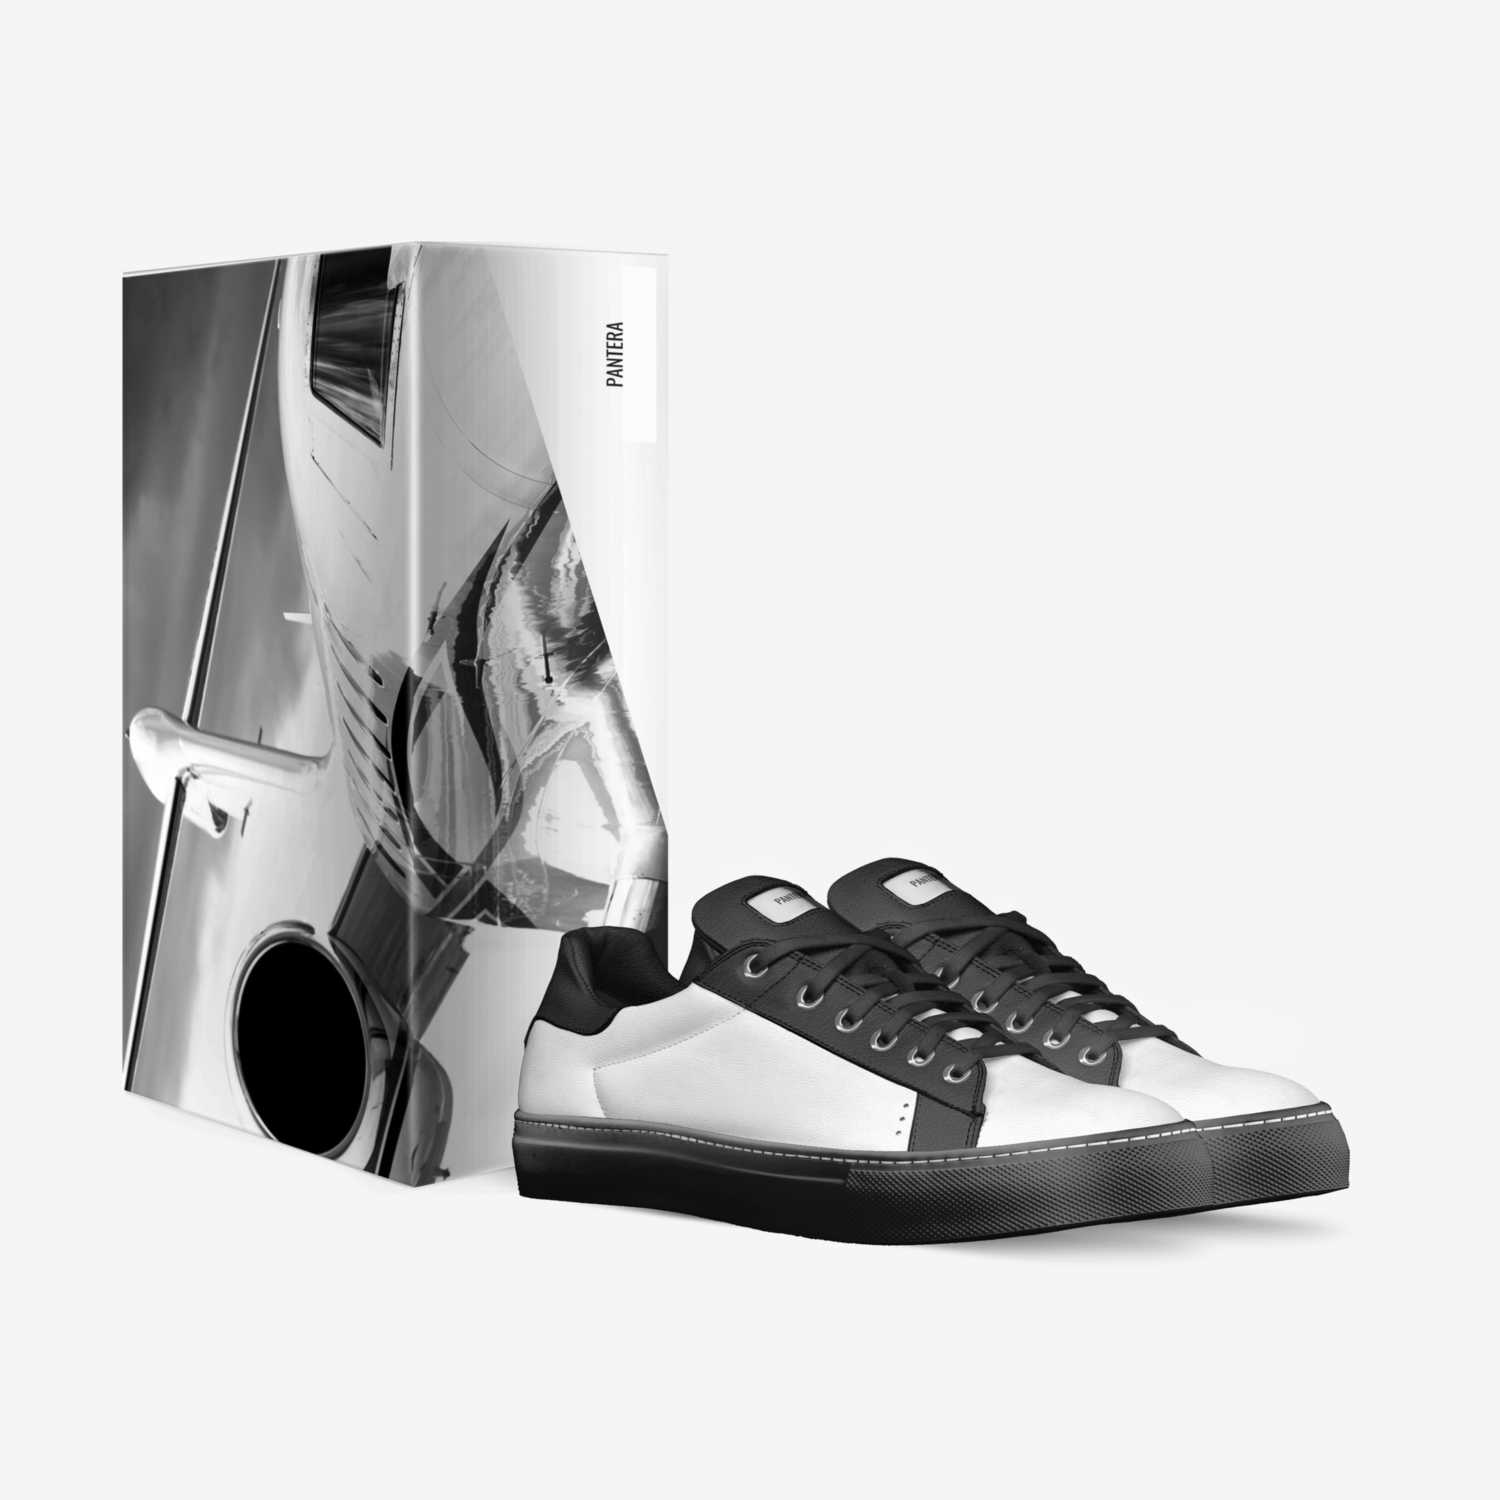 PANTERA custom made in Italy shoes by Karina | Box view